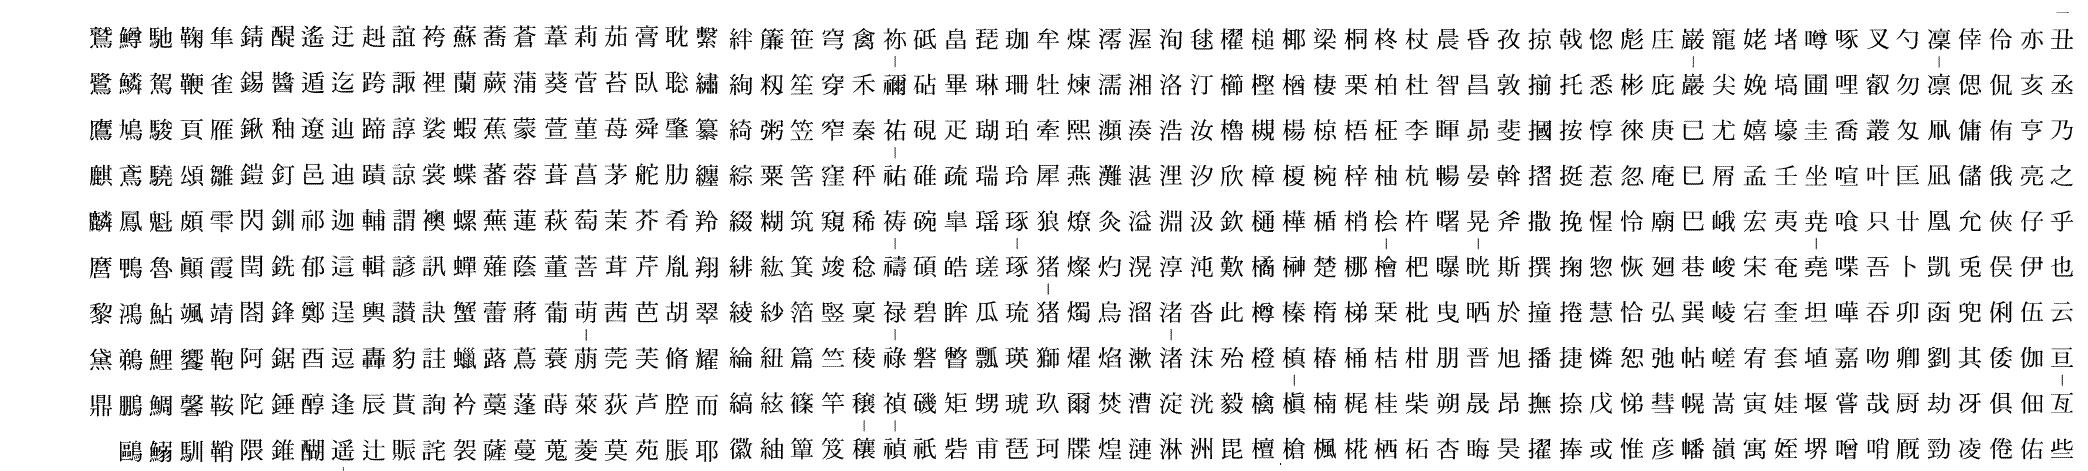 漢字の表